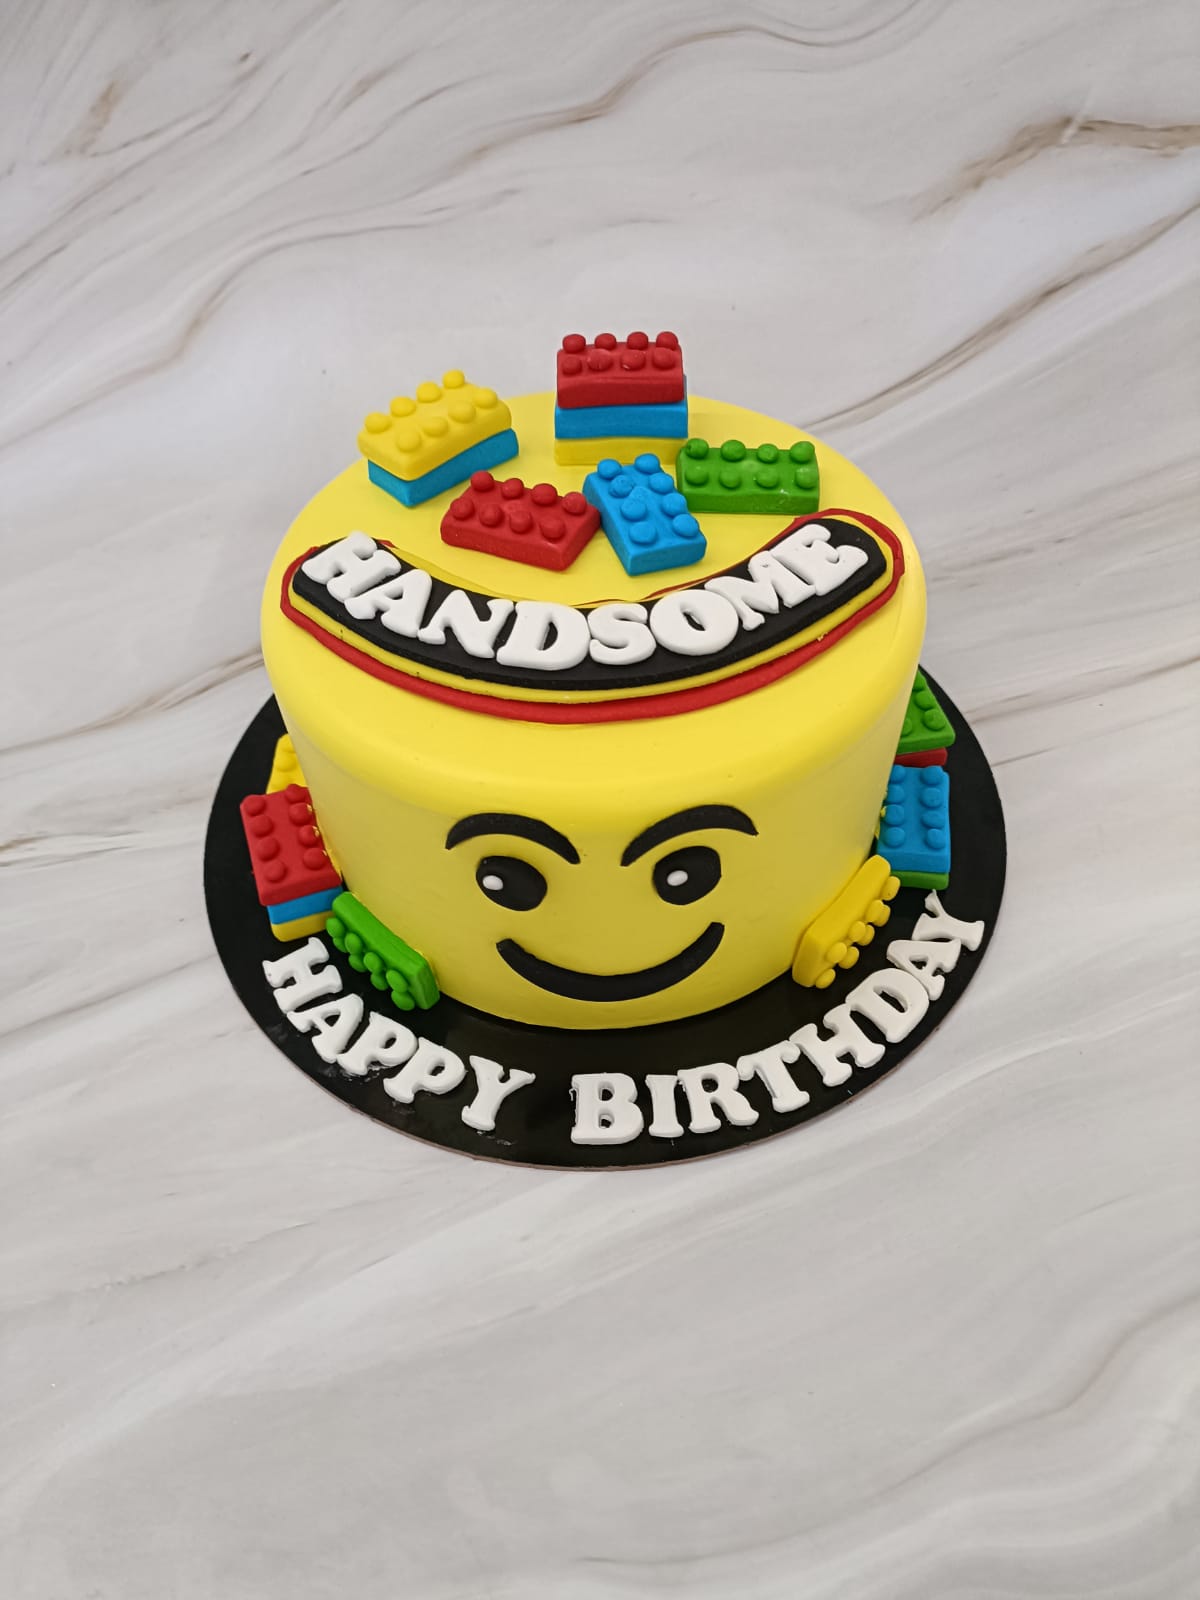 Lego Customize cake